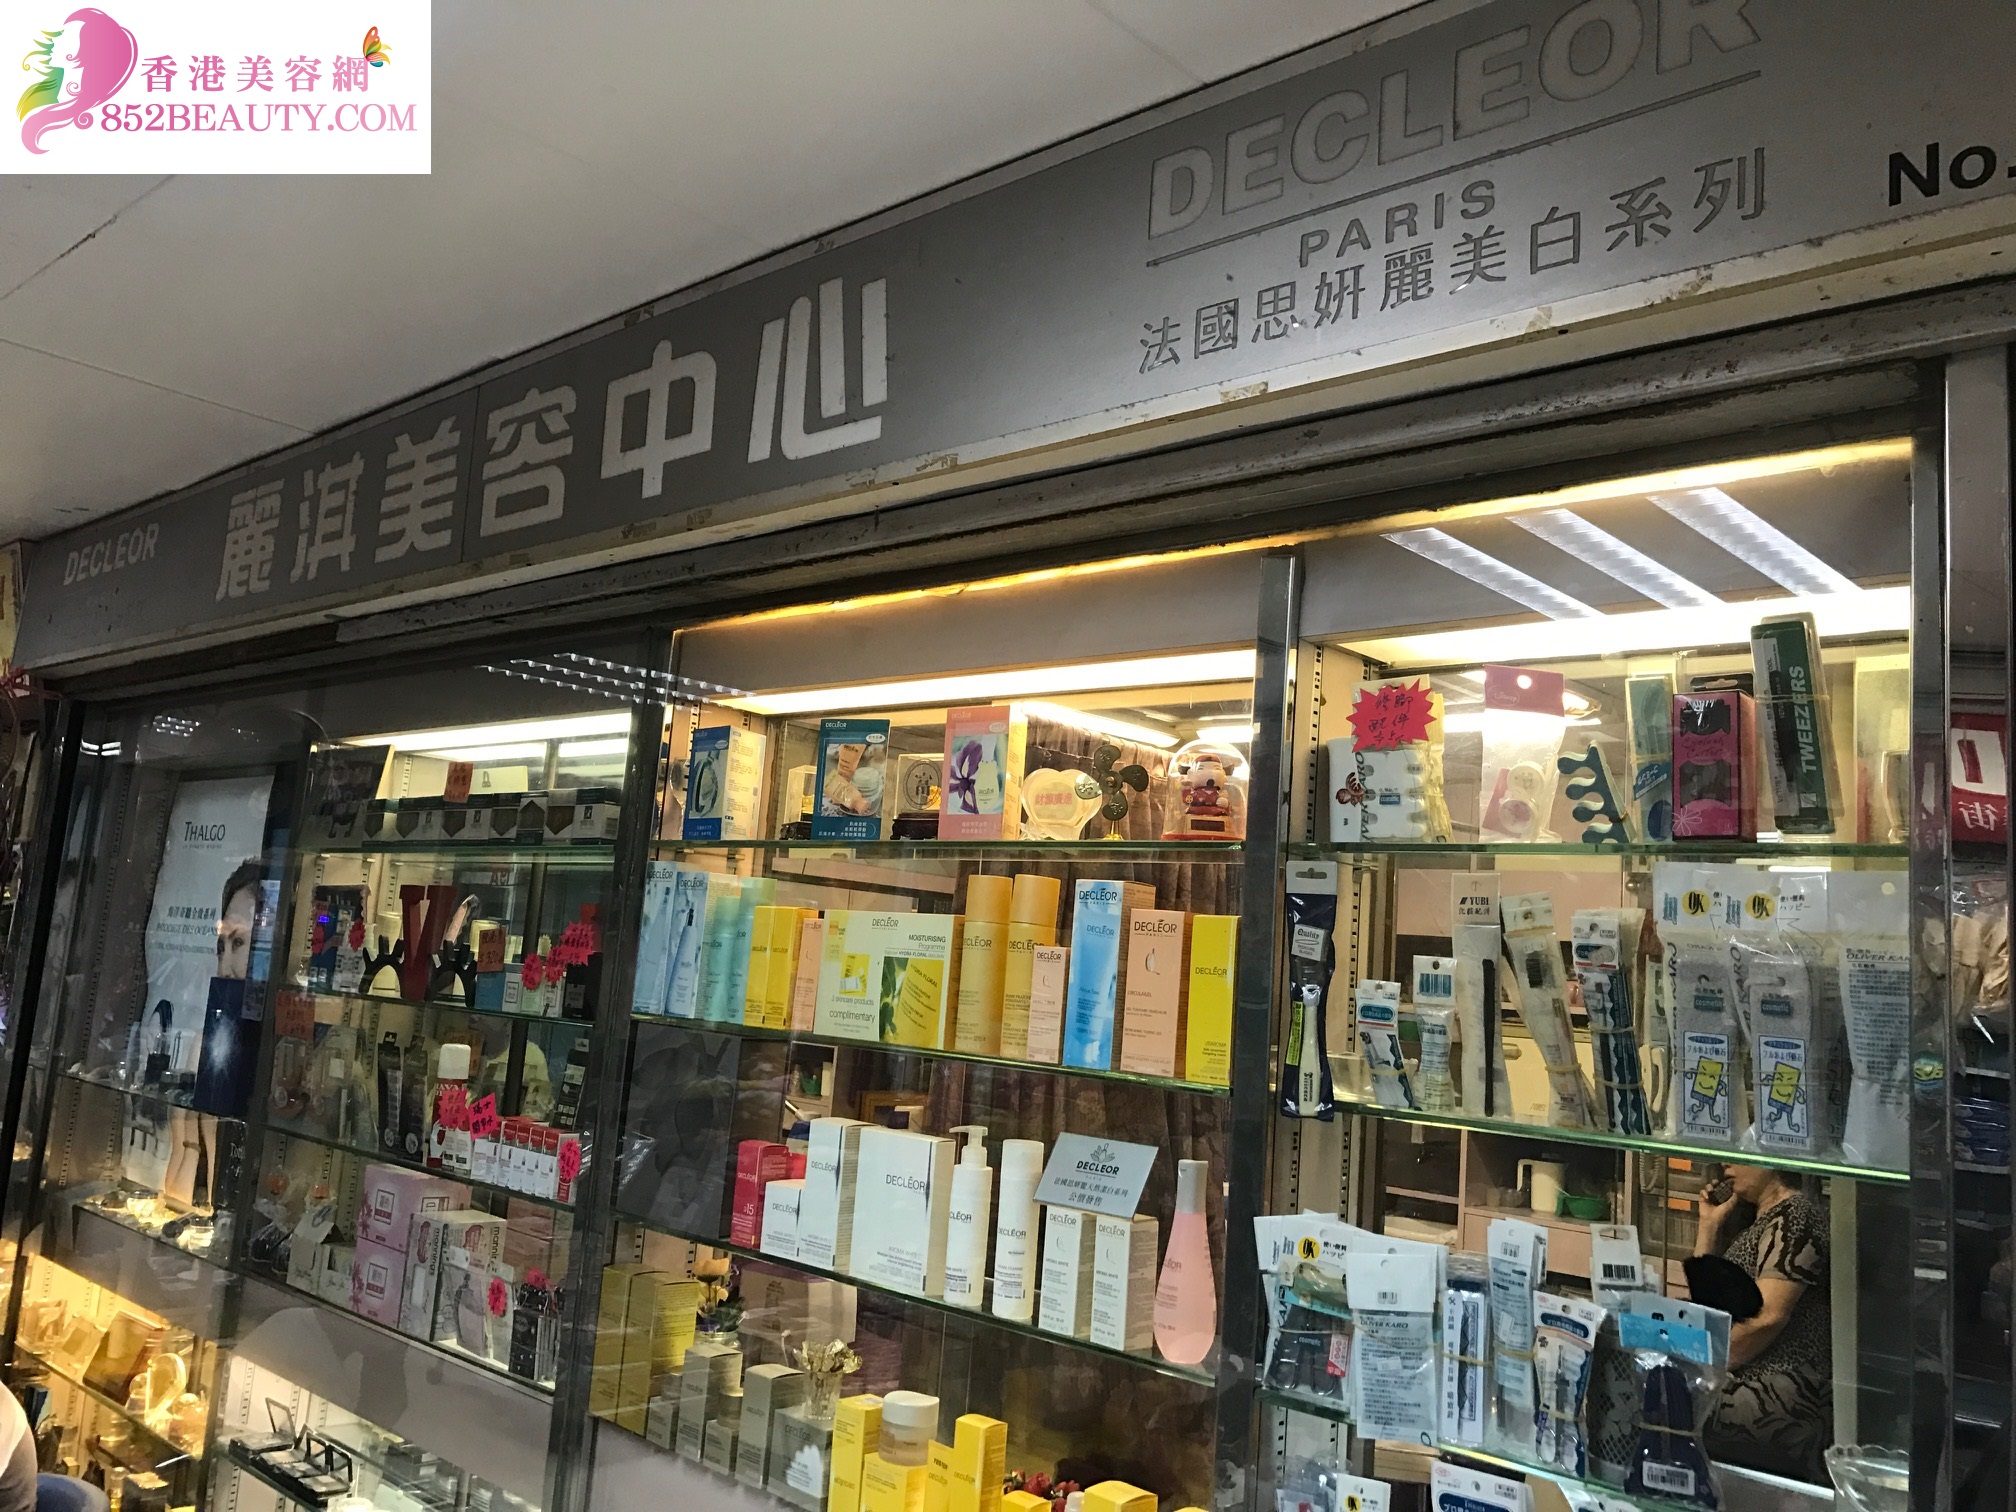 香港美容網 Hong Kong Beauty Salon 美容院 / 美容師: 麗淇美容中心